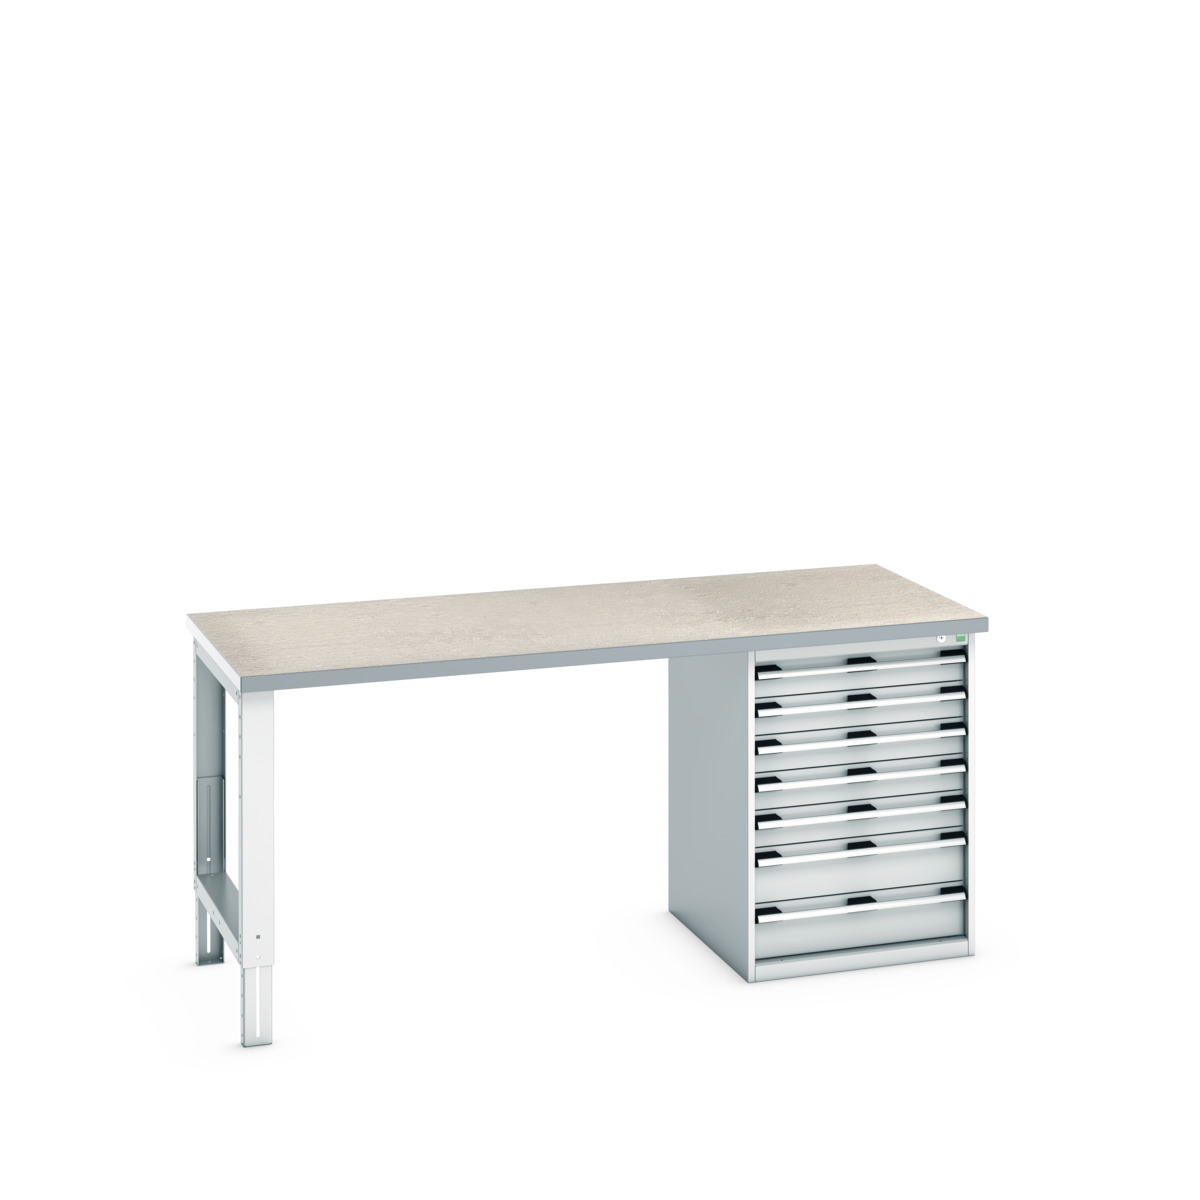 41004124.16V - cubio pedestal bench (lino)